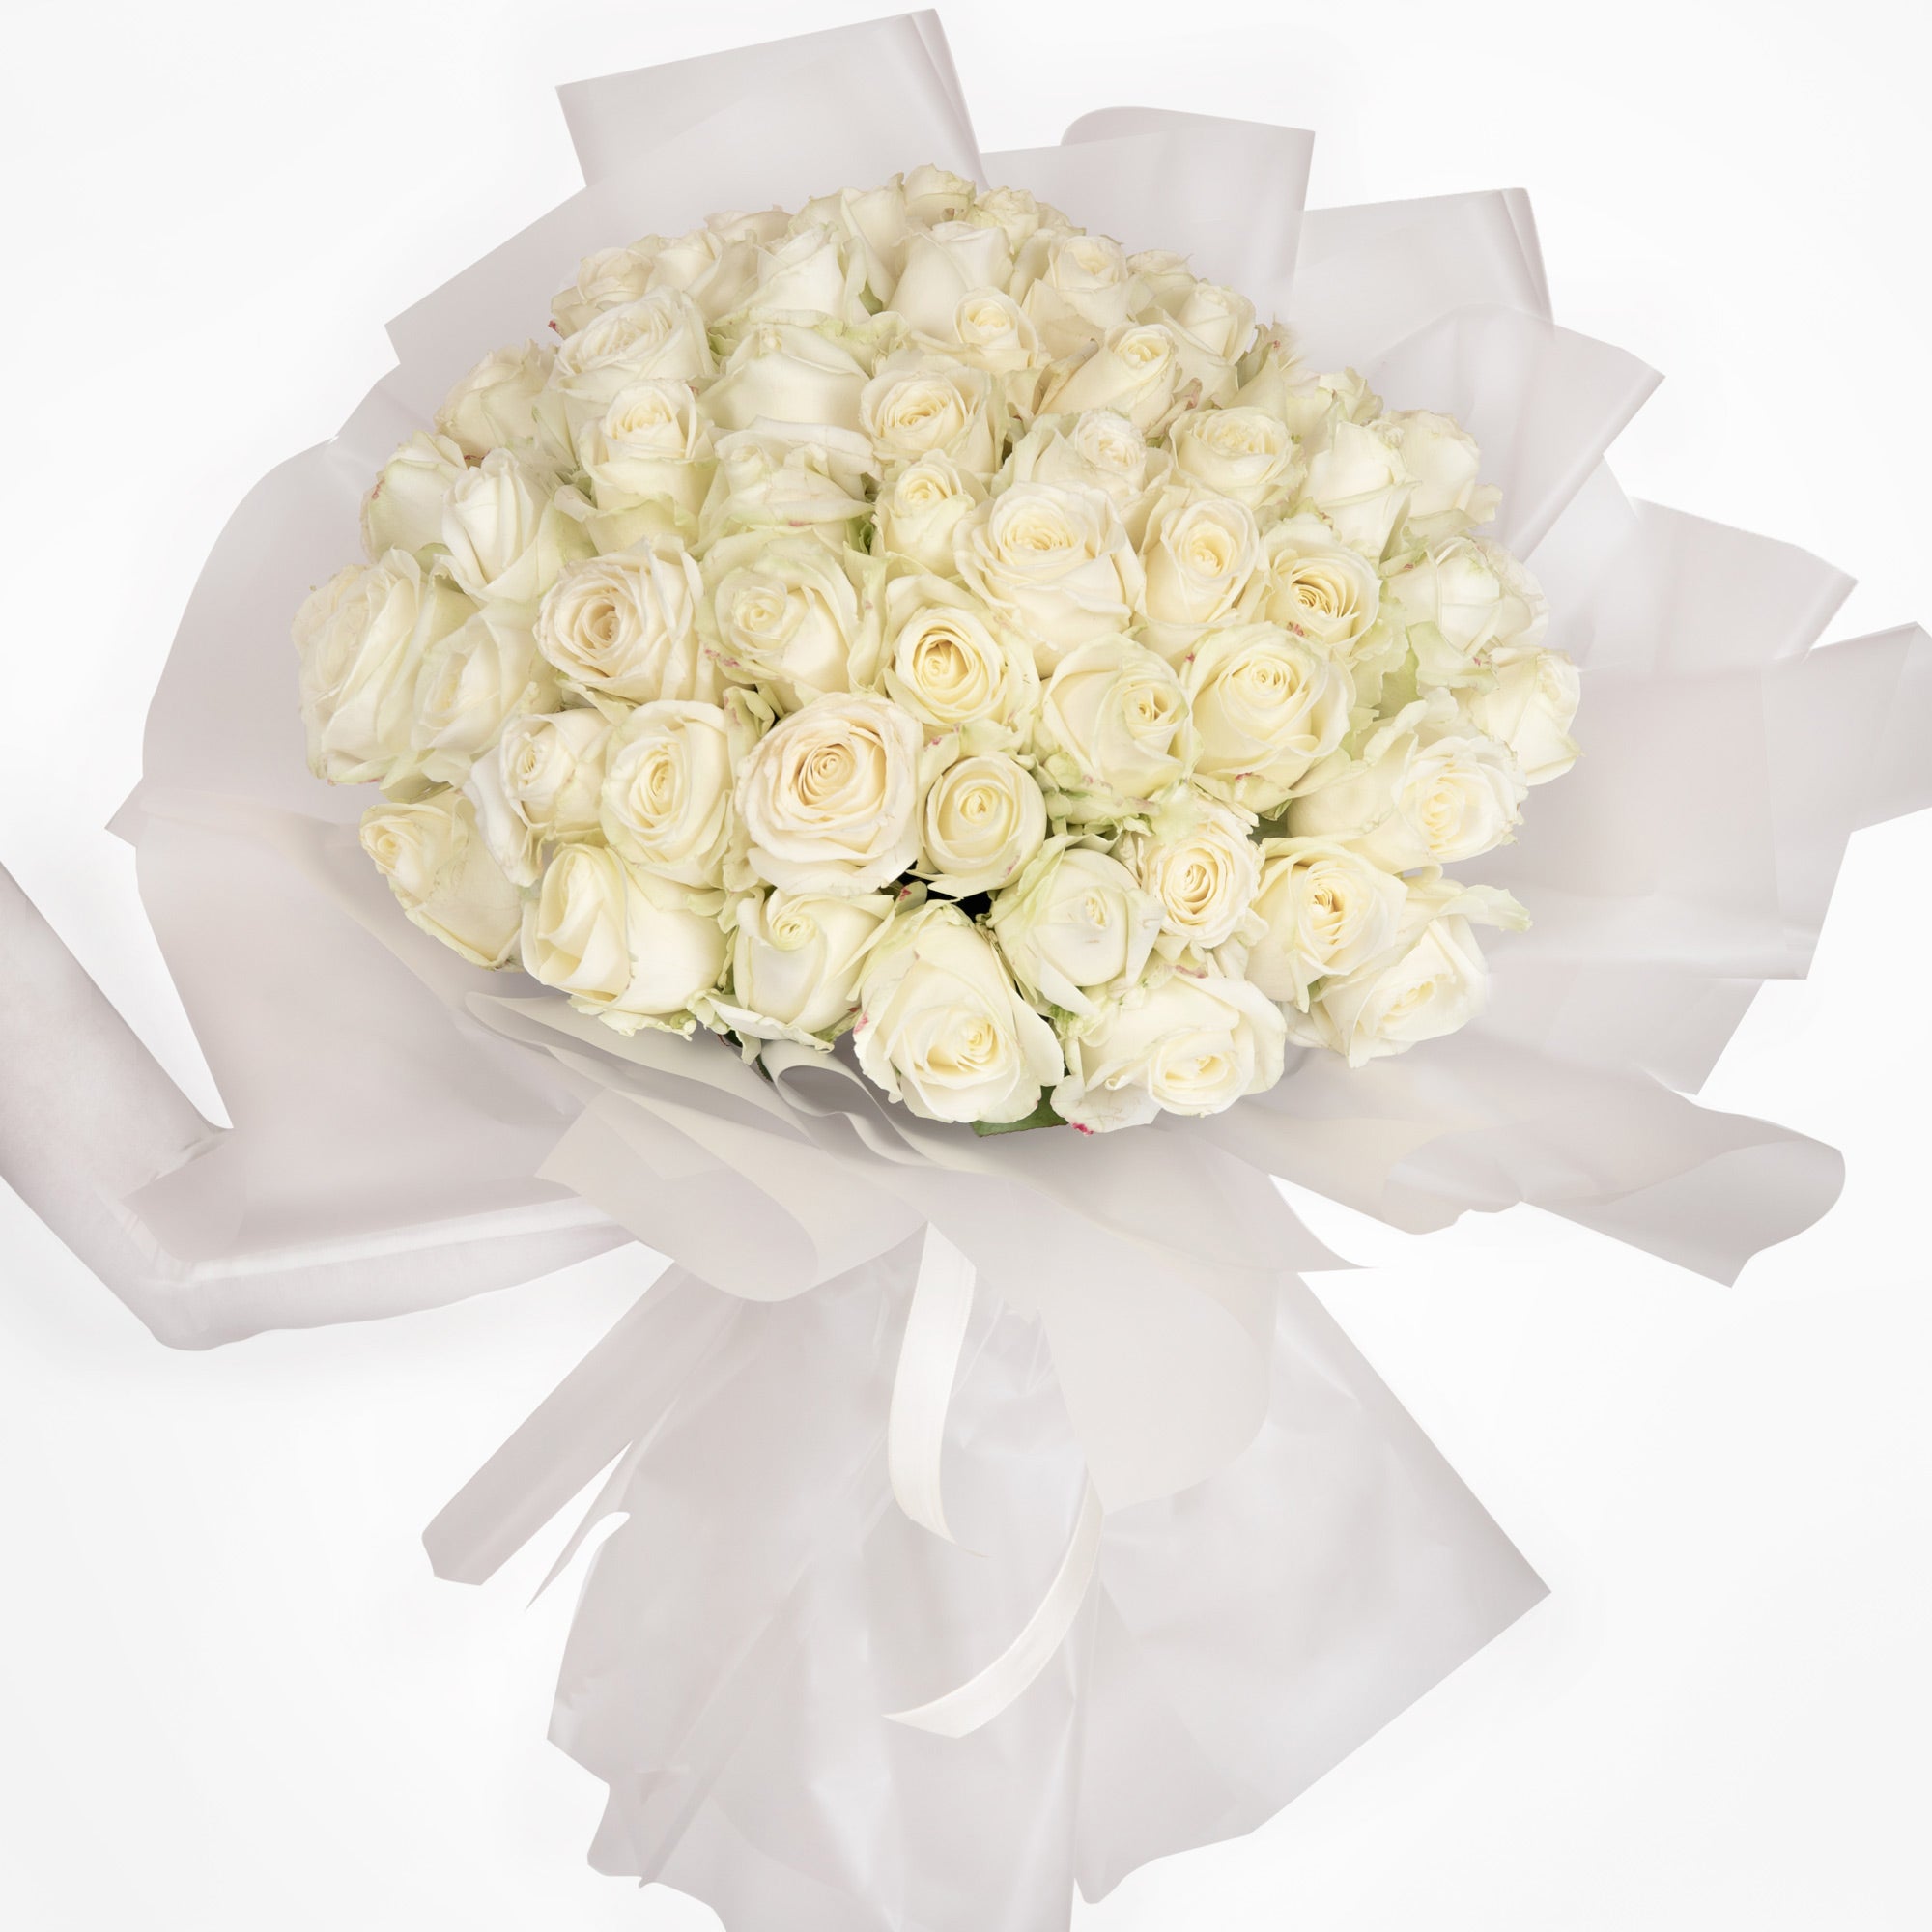 Buchet cu 65 trandafiri albi